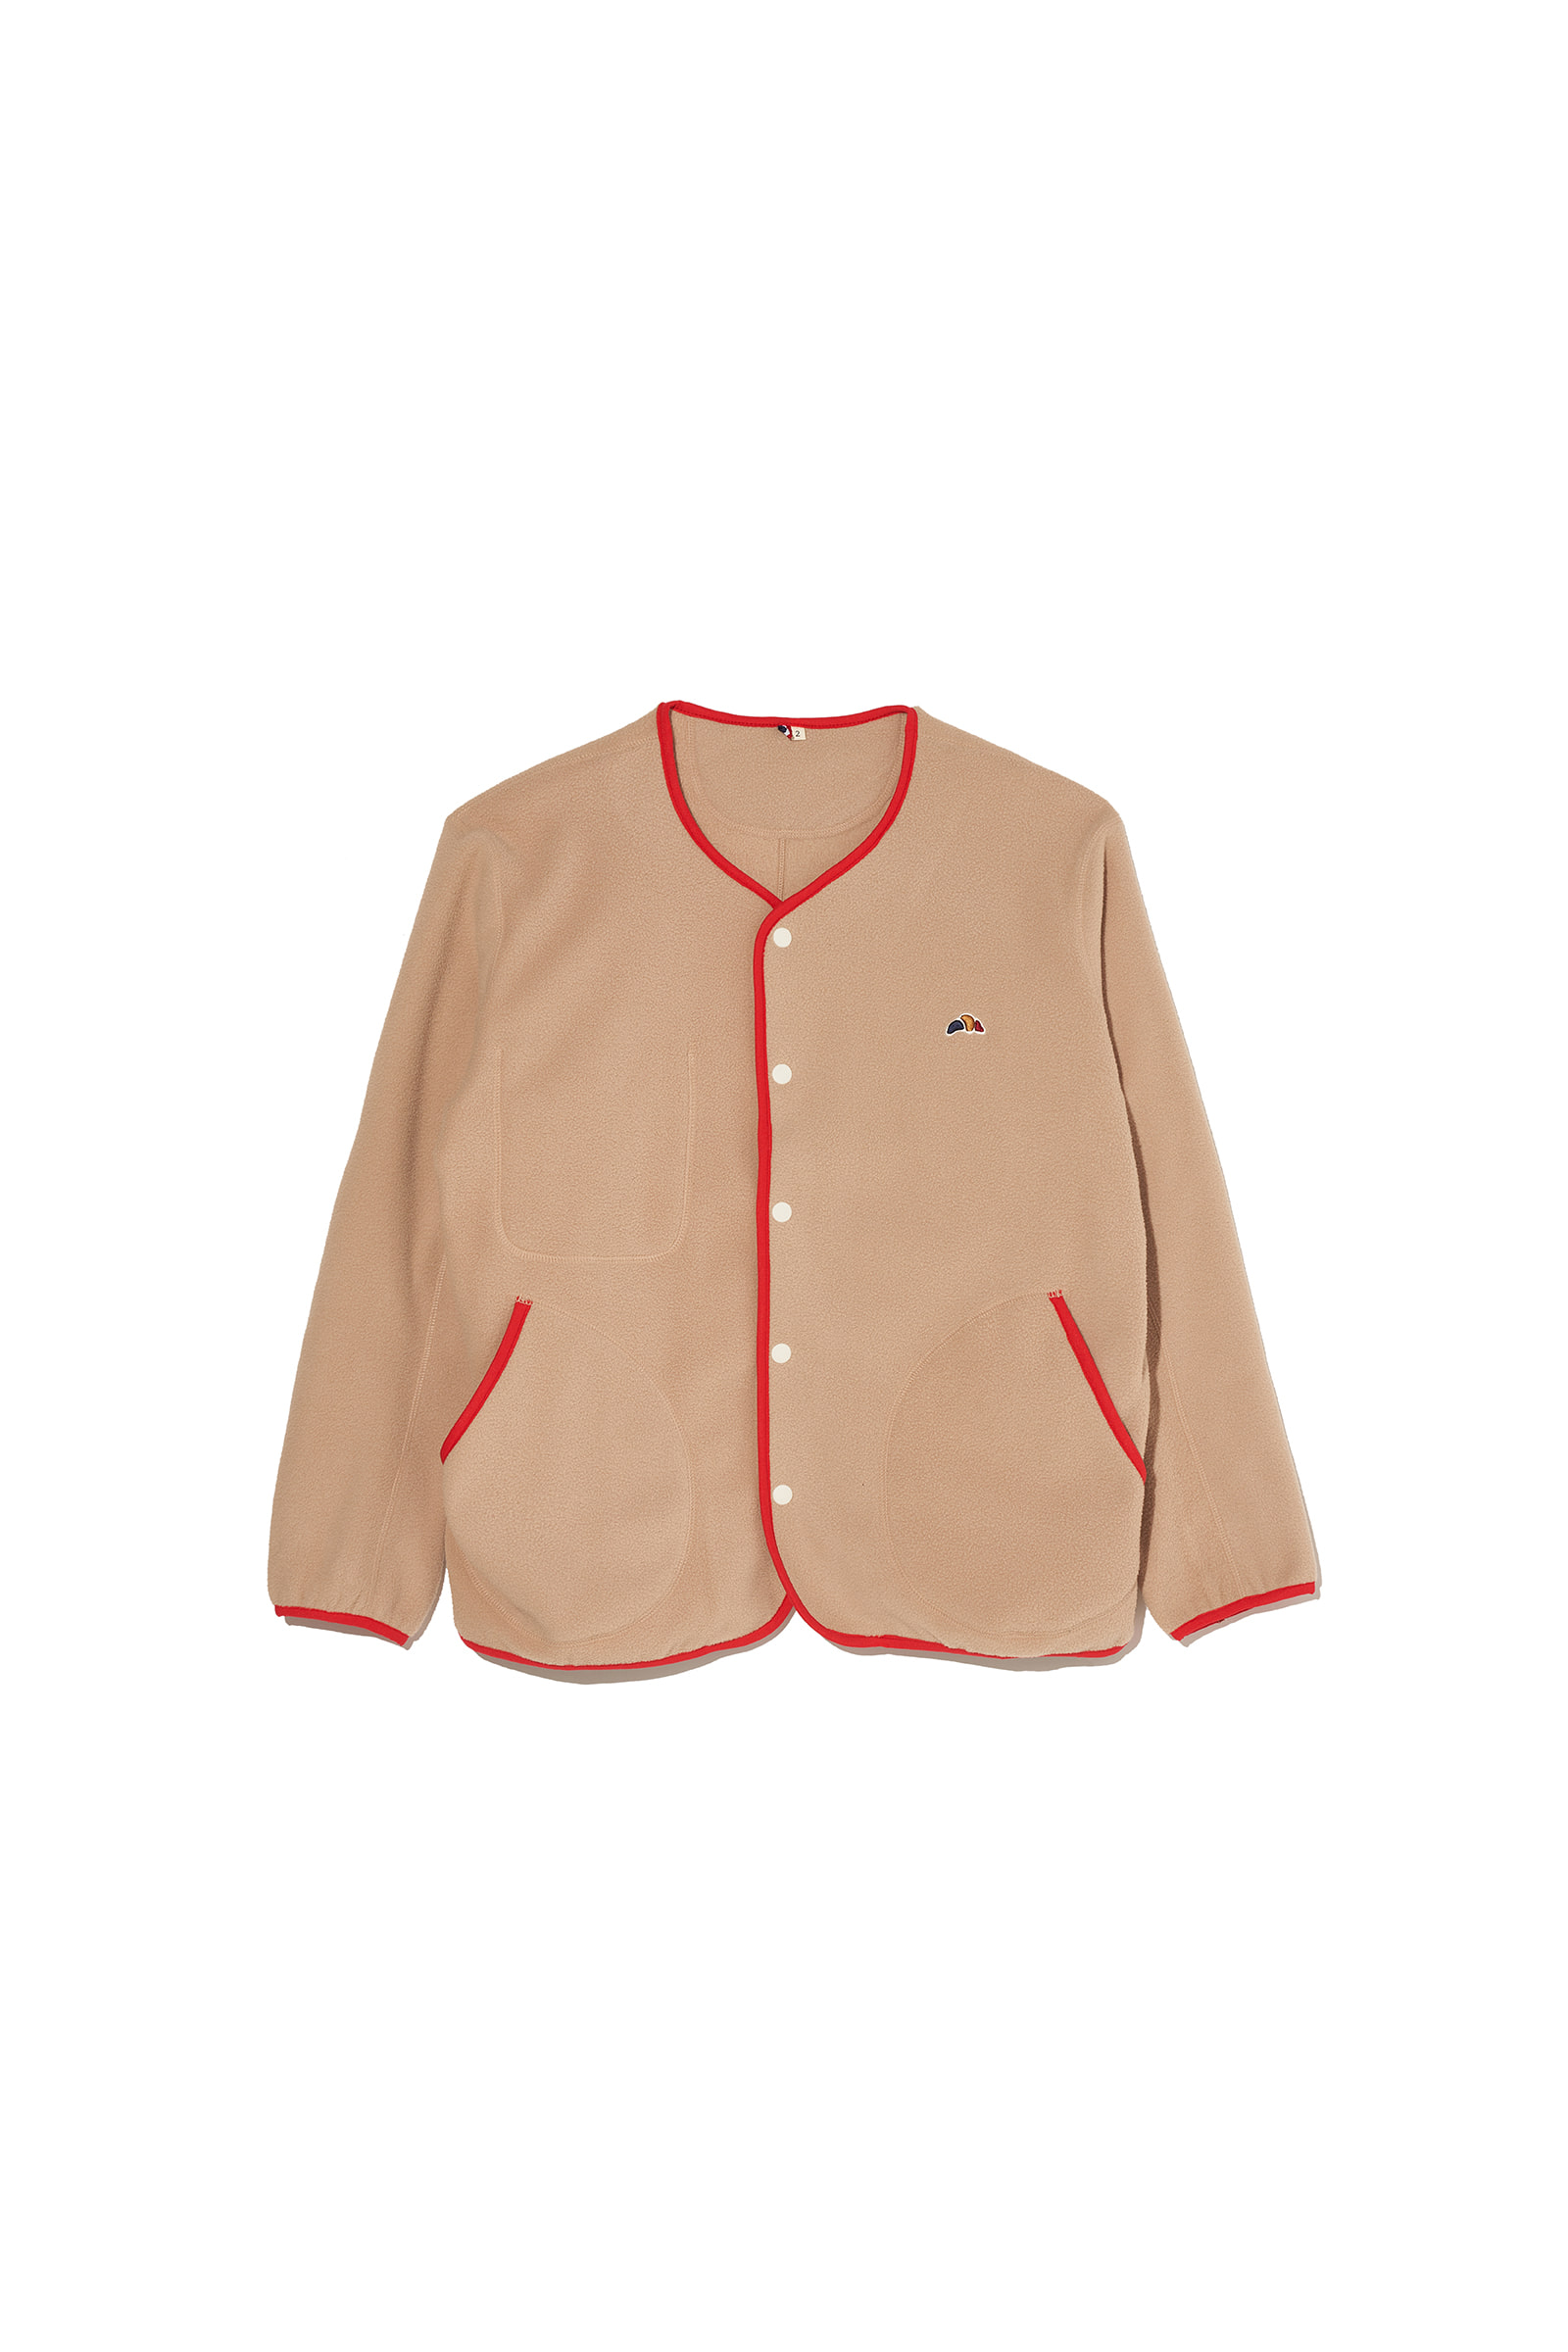 ep.5 Croissant no collar fleece jacket (Beige)